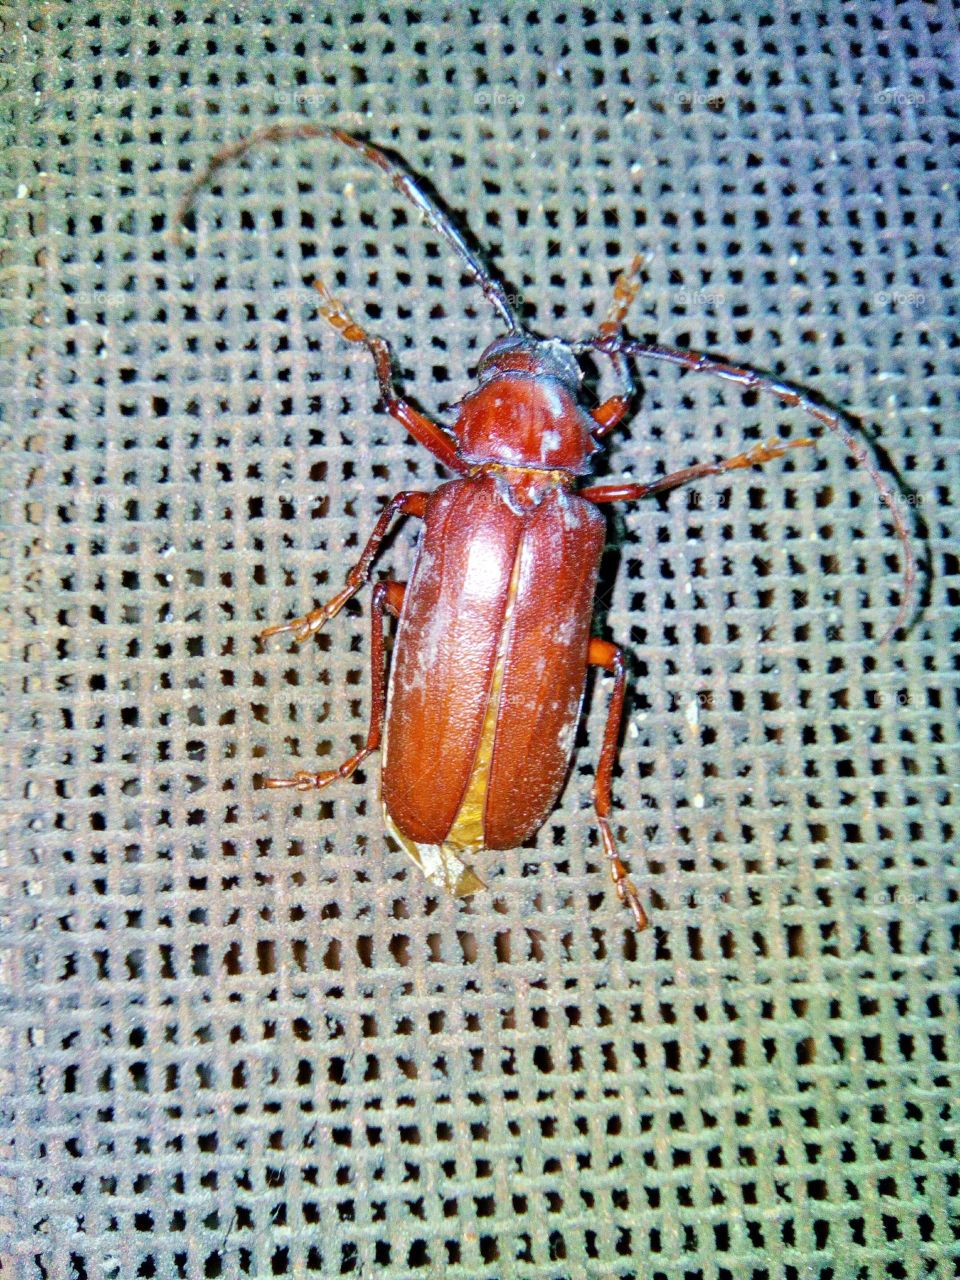 A Bug.